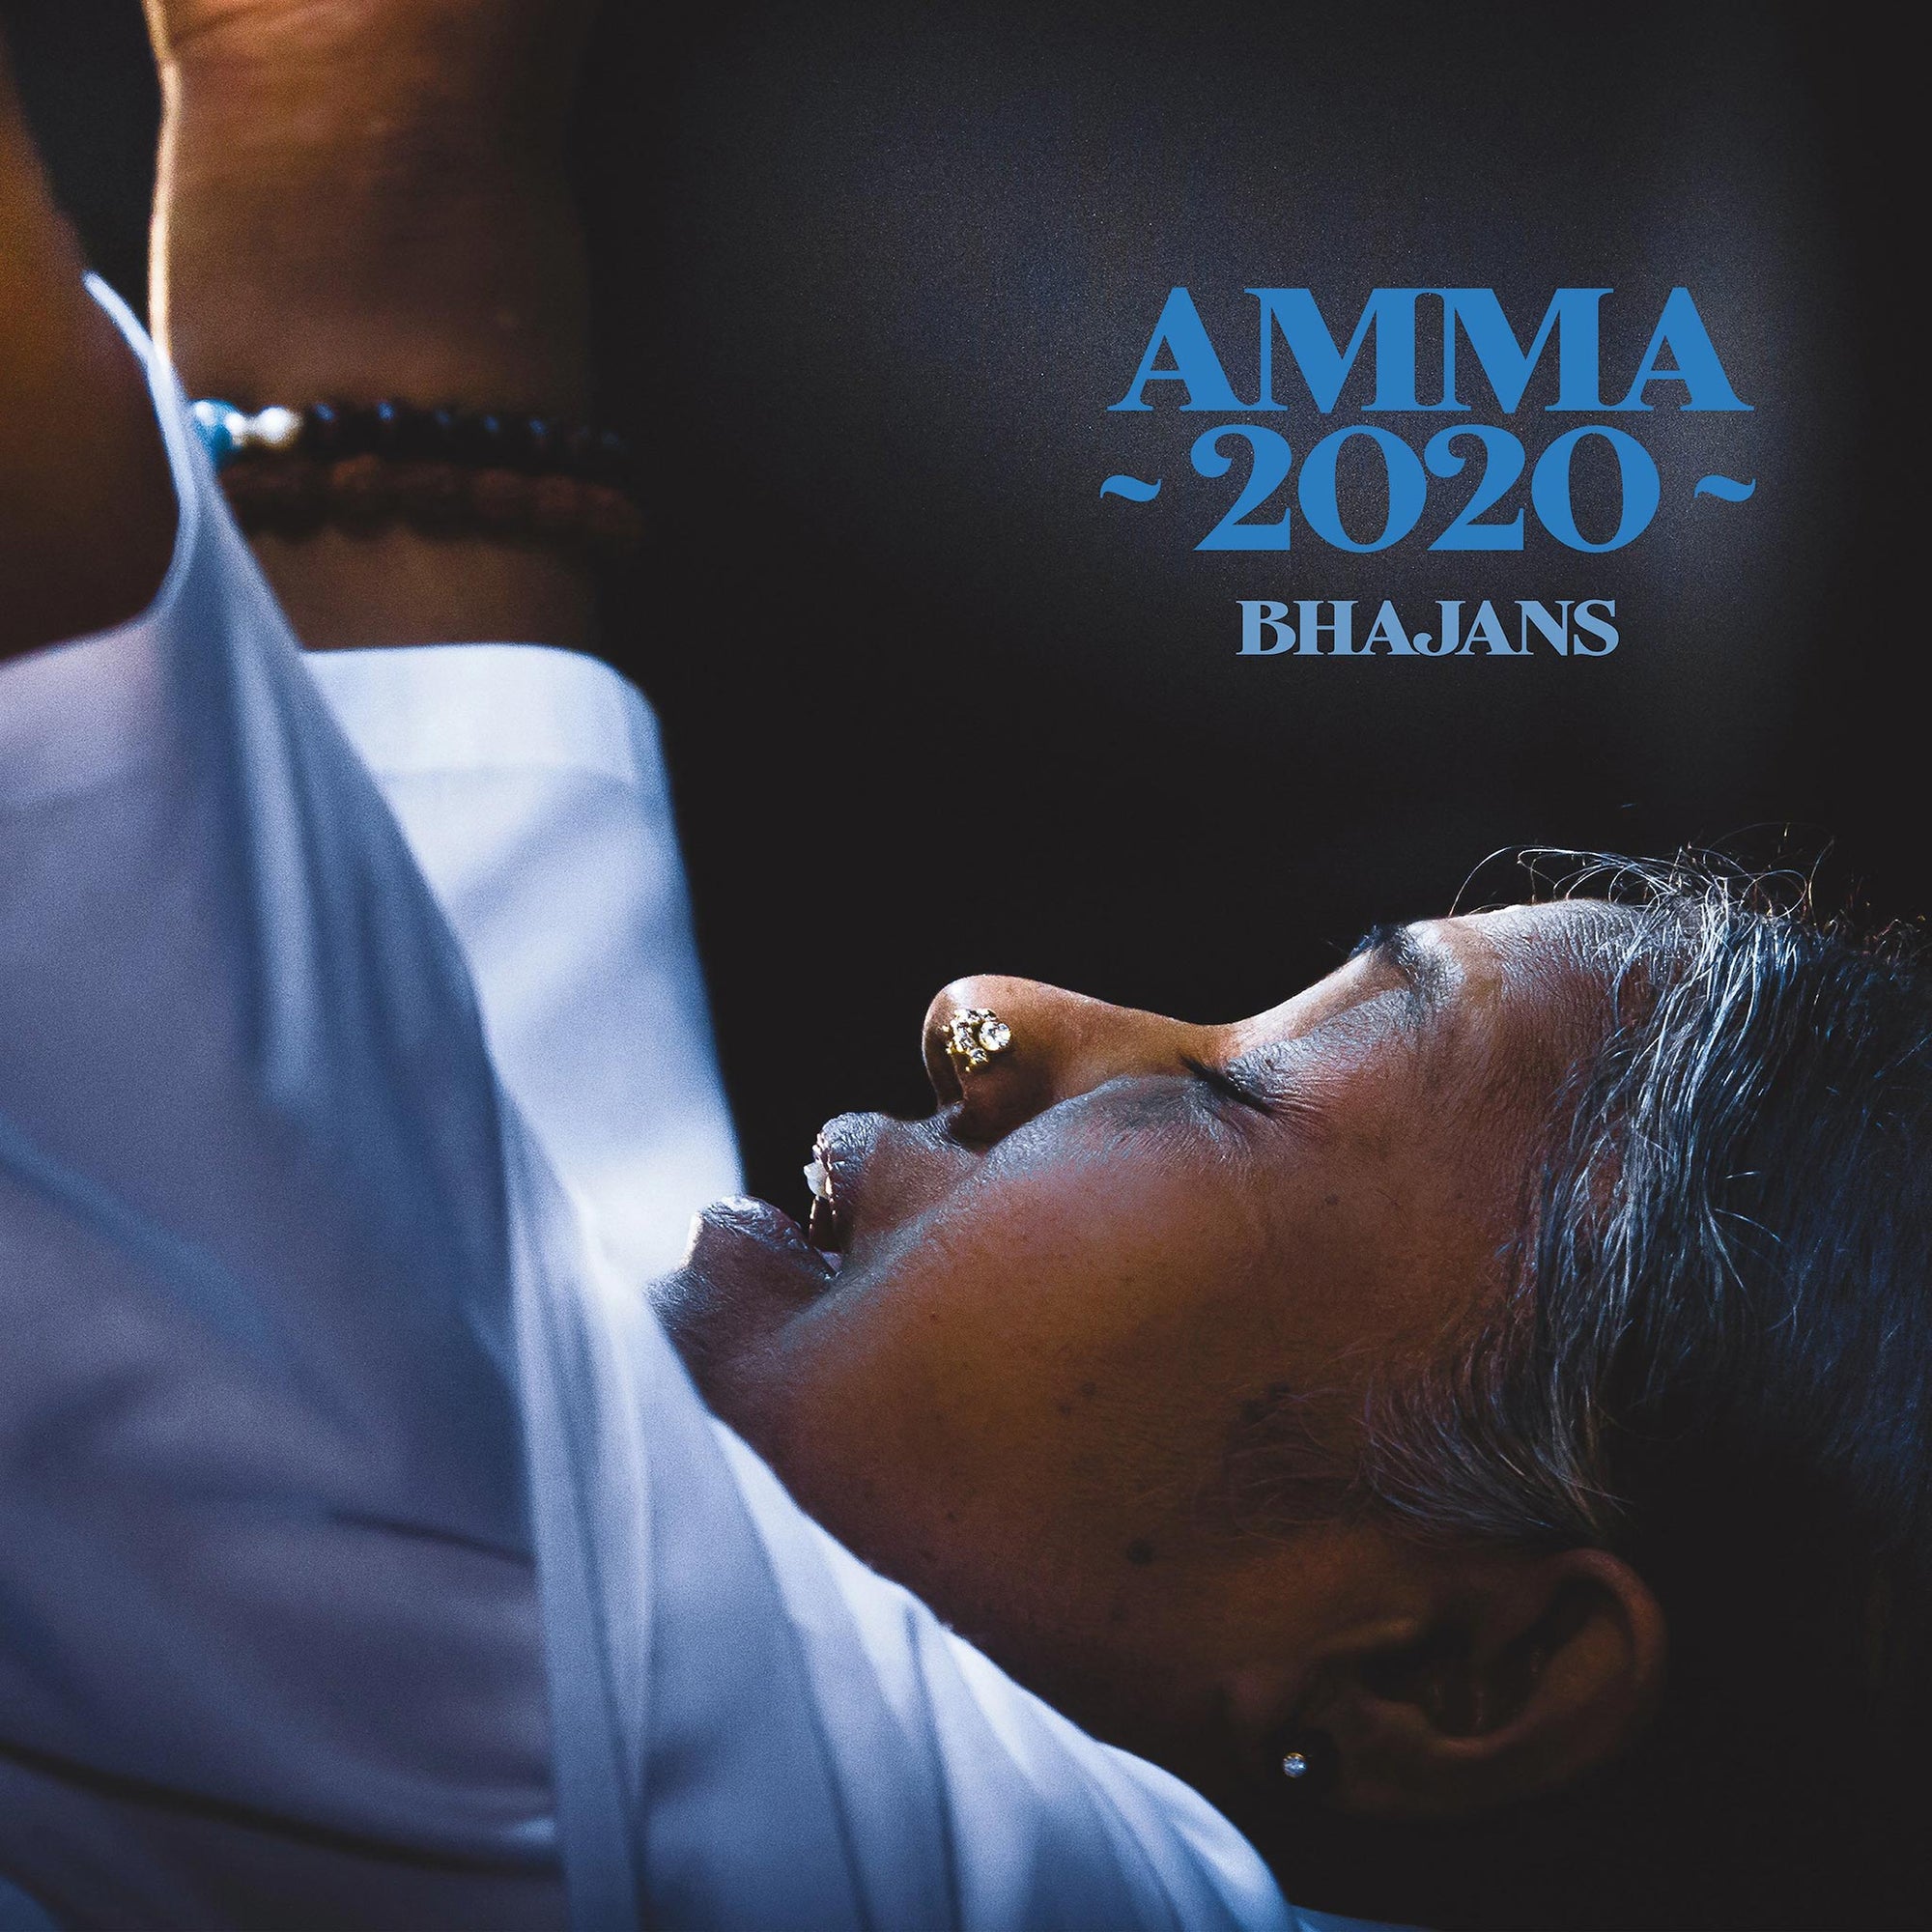 Amma 2020 Bhajans - PERSIAN (Digital)